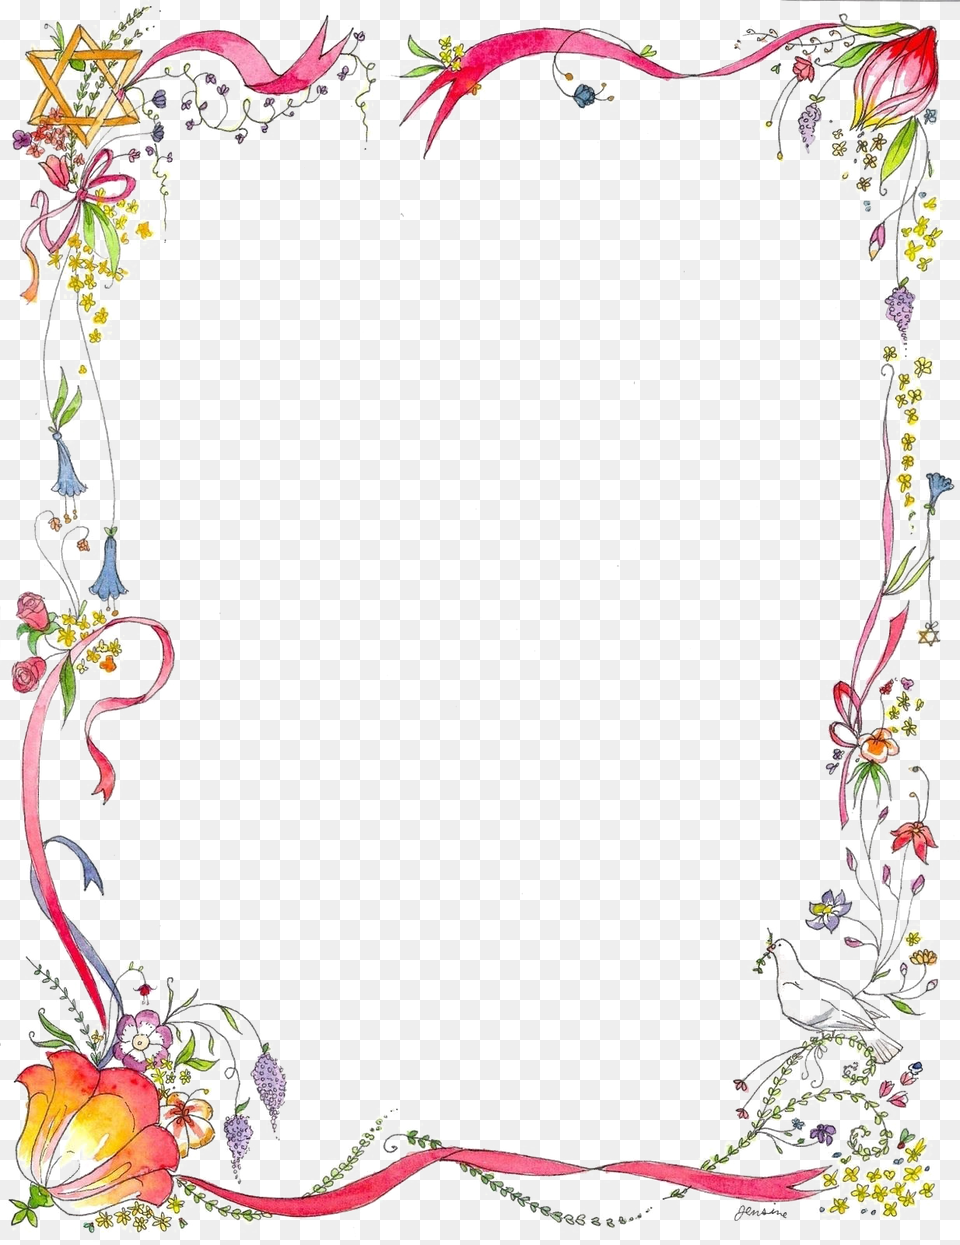 Floral Border Designs Image, Art, Floral Design, Graphics, Pattern Free Png